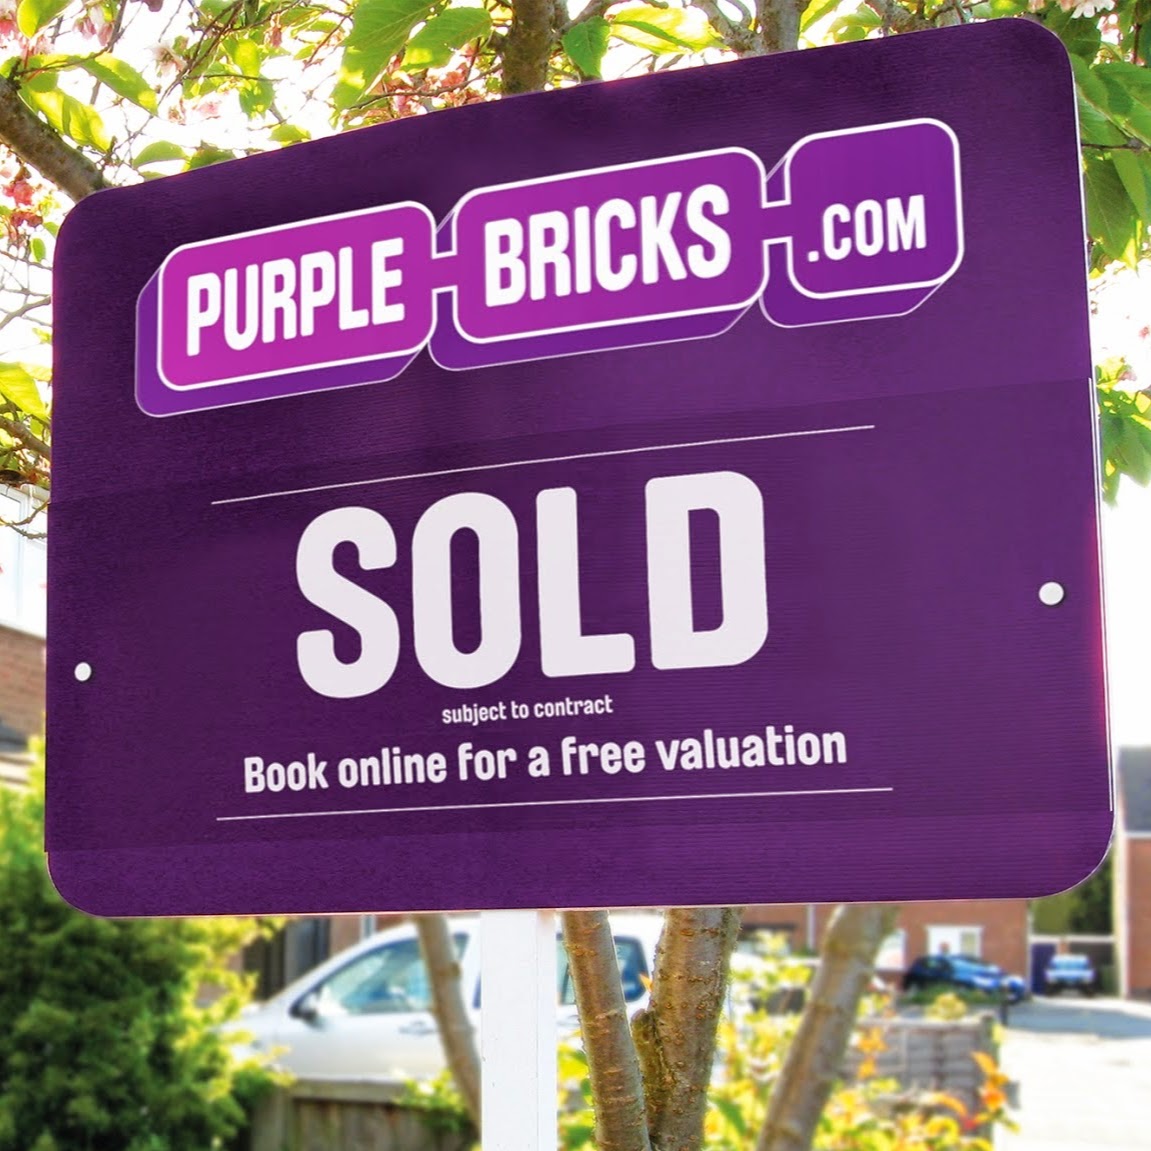 Purplebricks Sold sign